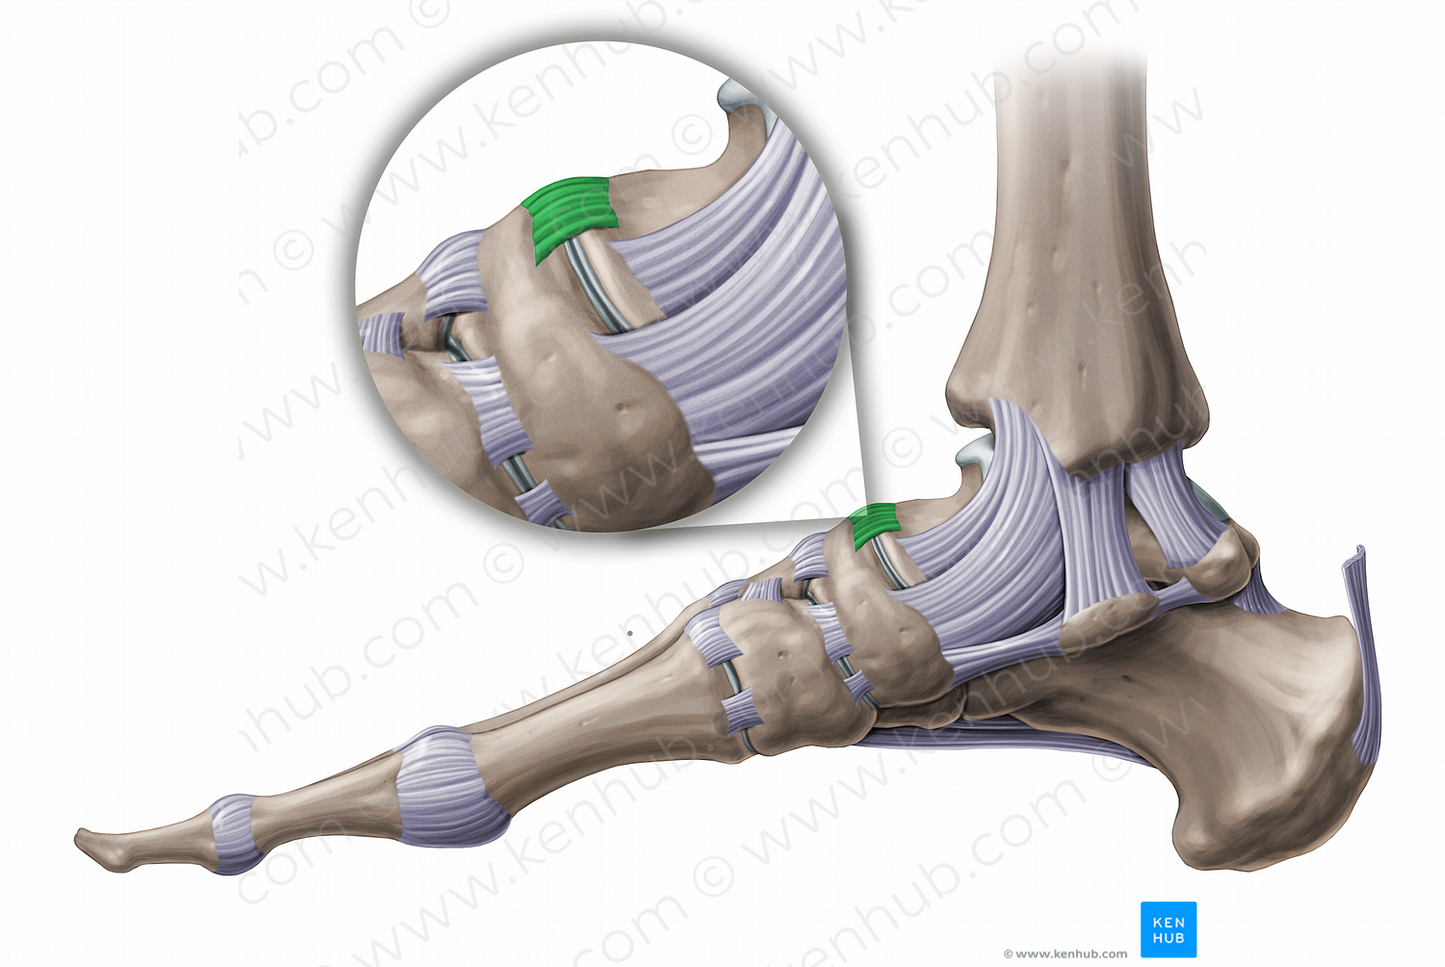 Talonavicular ligament (#11234)